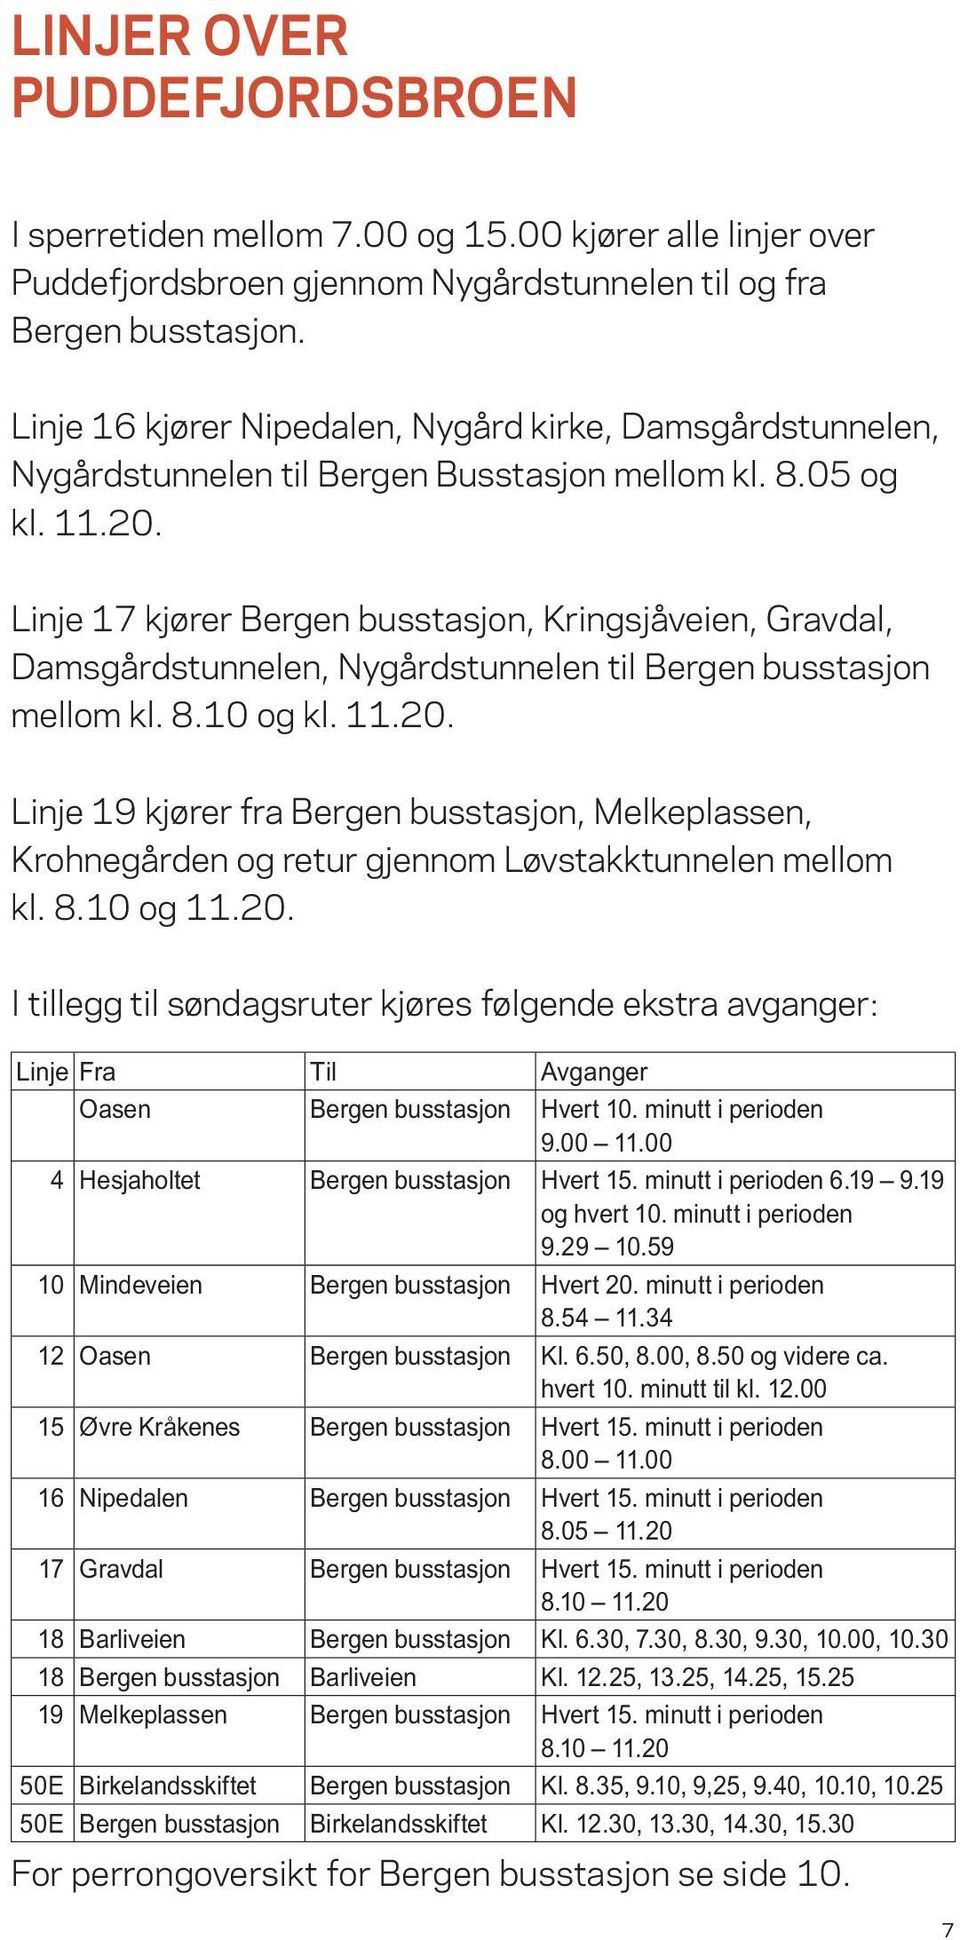 Linje 17 kjører Bergen busstasjon, Kringsjåveien, Gravdal, Damsgårdstunnelen, Nygårdstunnelen til Bergen busstasjon mellom kl. 8.10 og kl. 11.20.